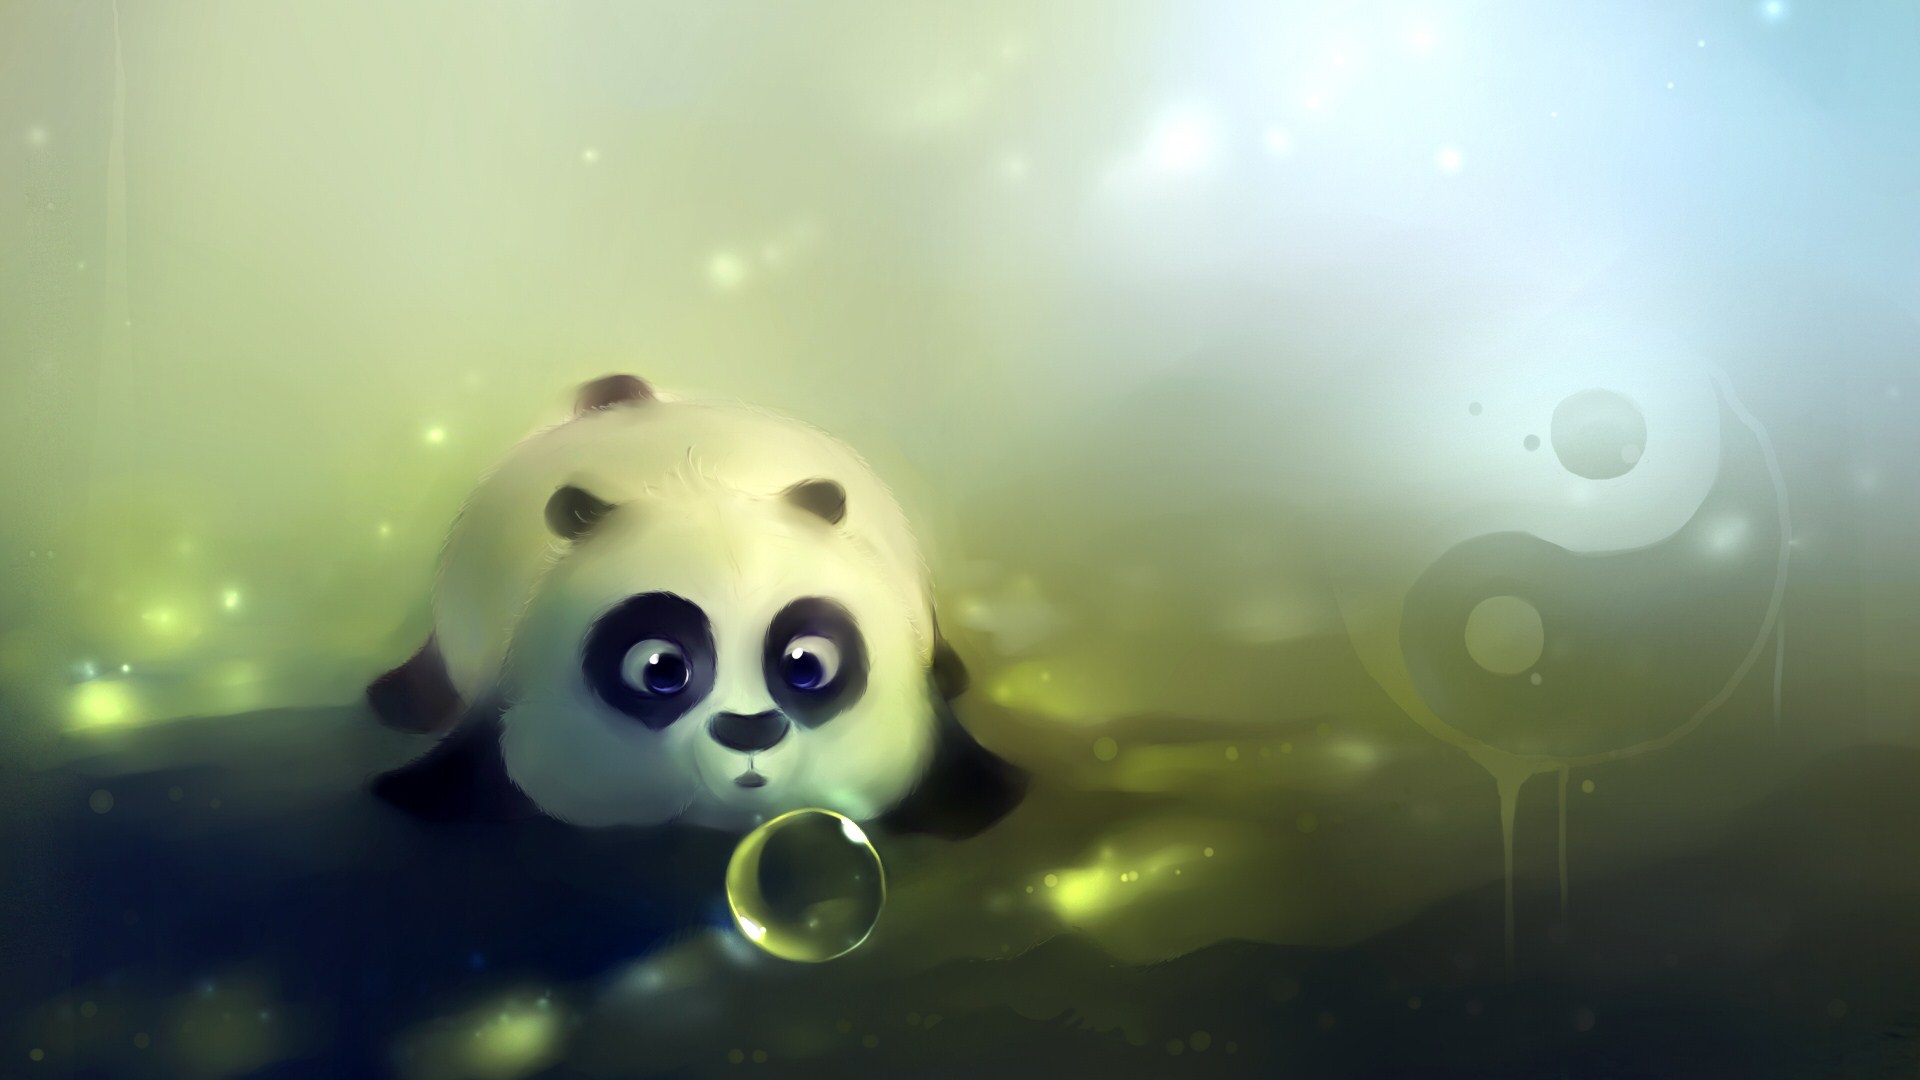 Panda Cartoon HD Desktop Wallpaper